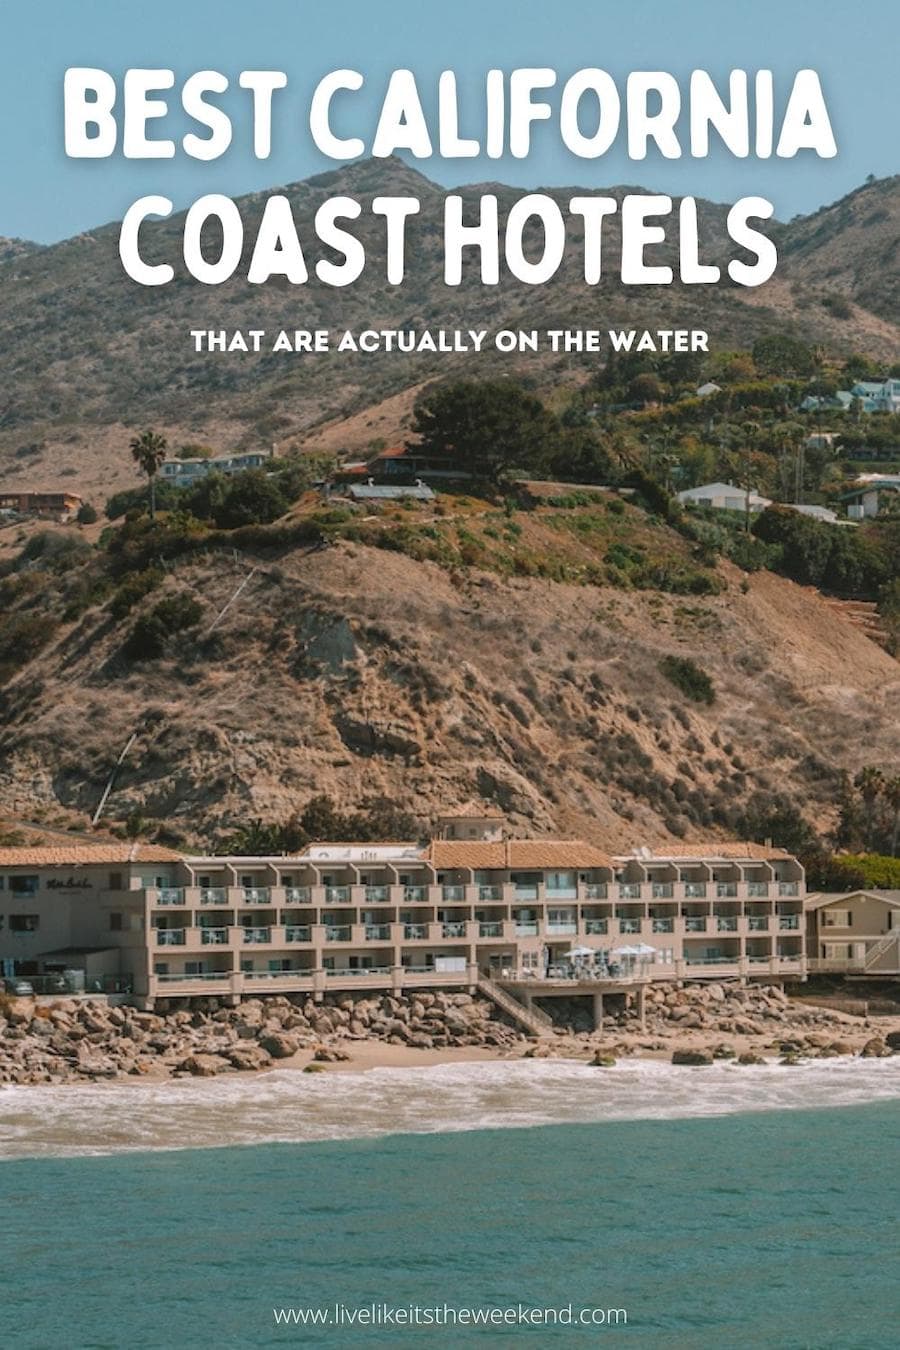 Cubierta de alfiler de hotel de la costa de California